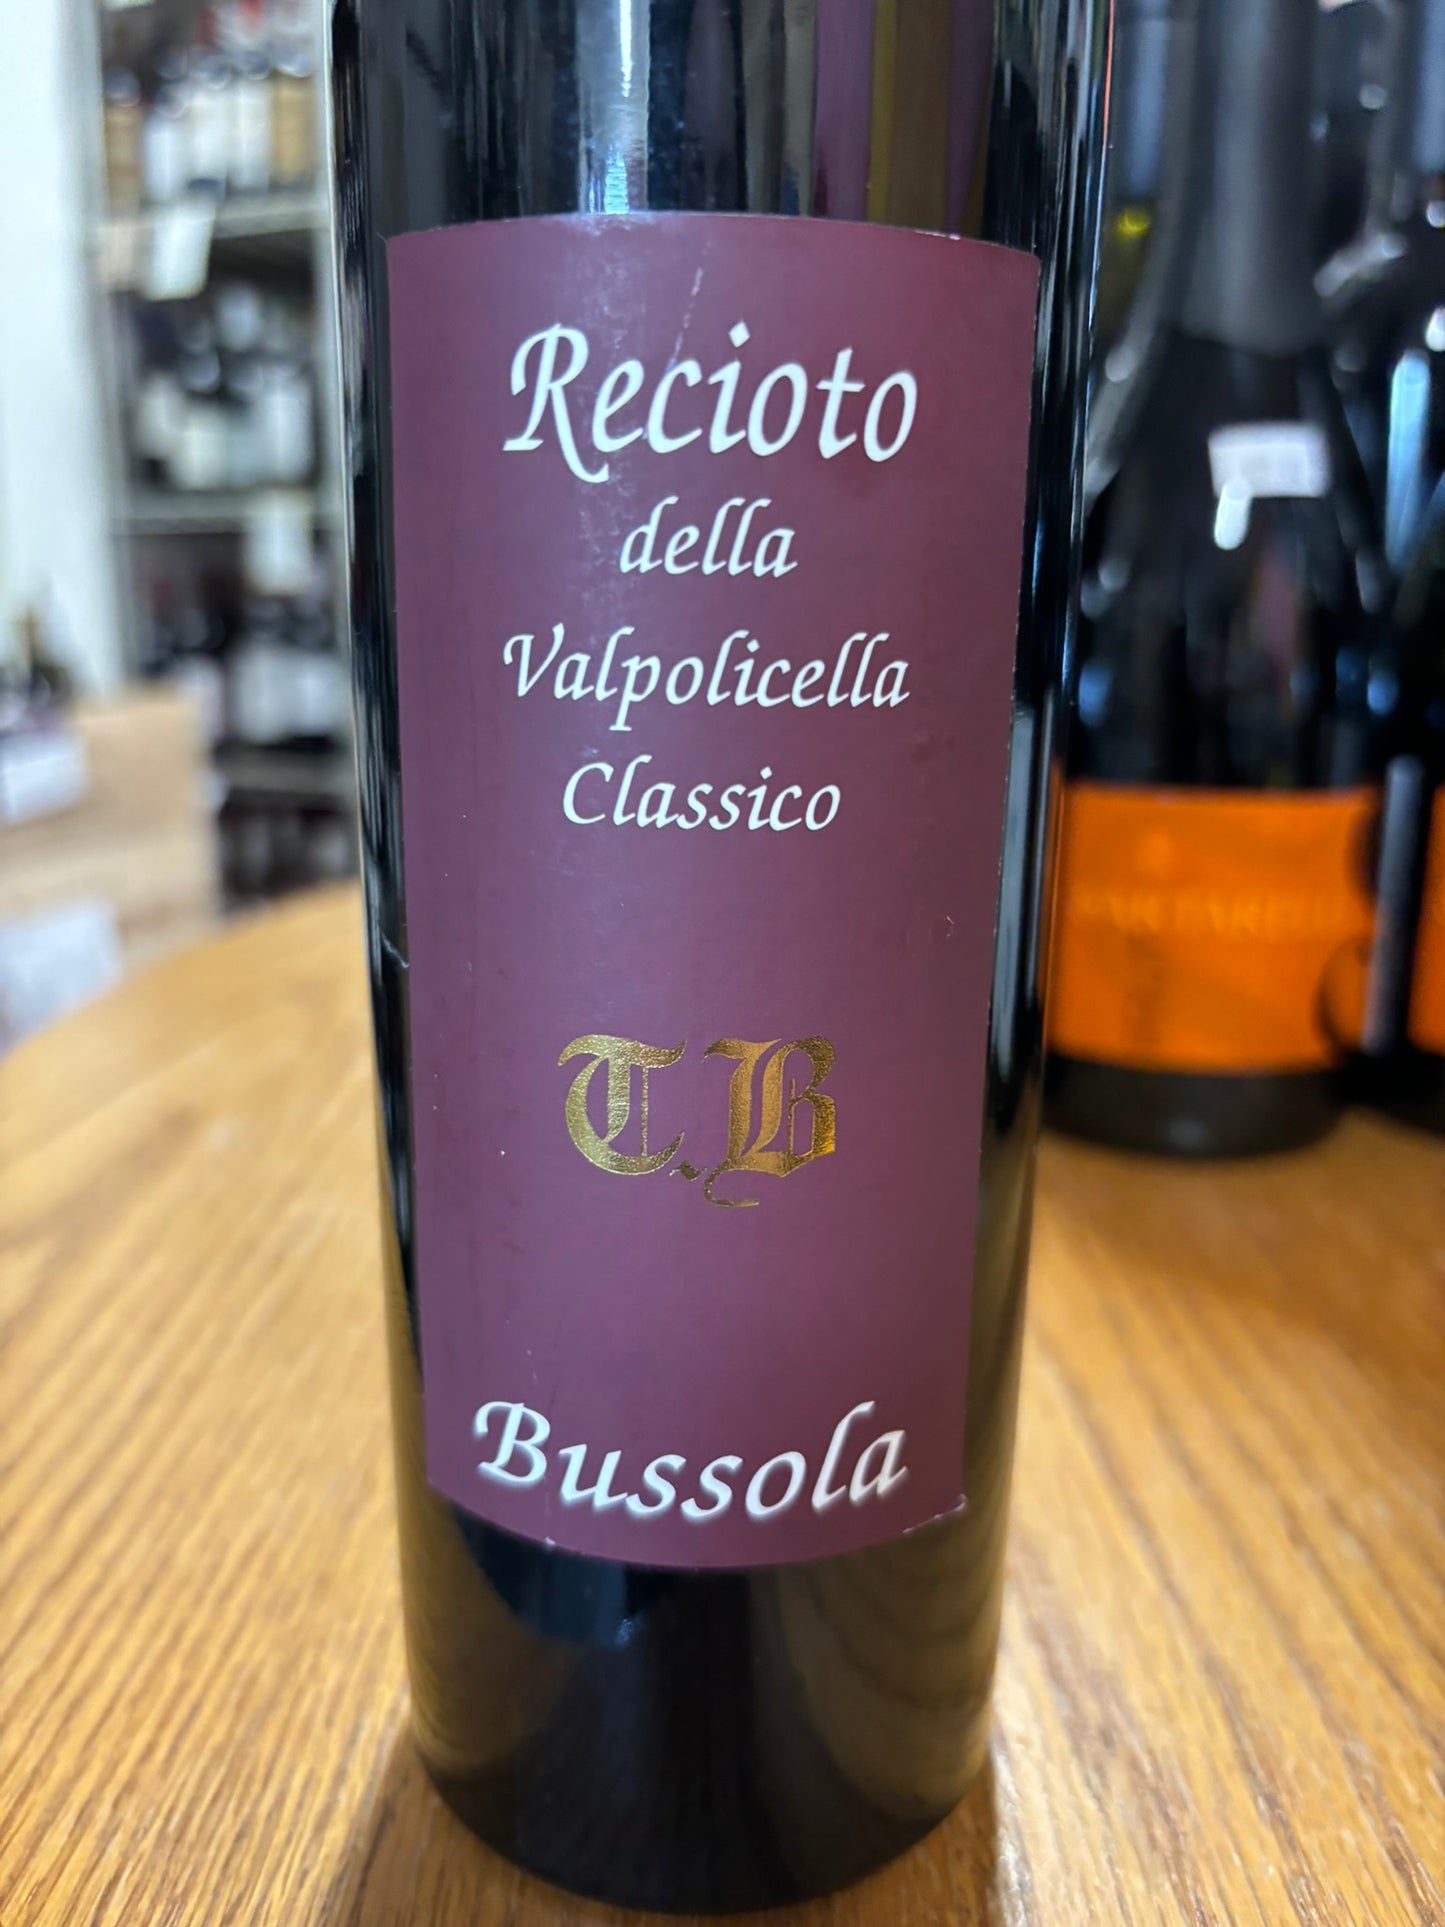 DOMAINE T. BUSSOLA 2001 Red Blend 'Recioto della Valpolicella Classico' (Veneto, Italy)